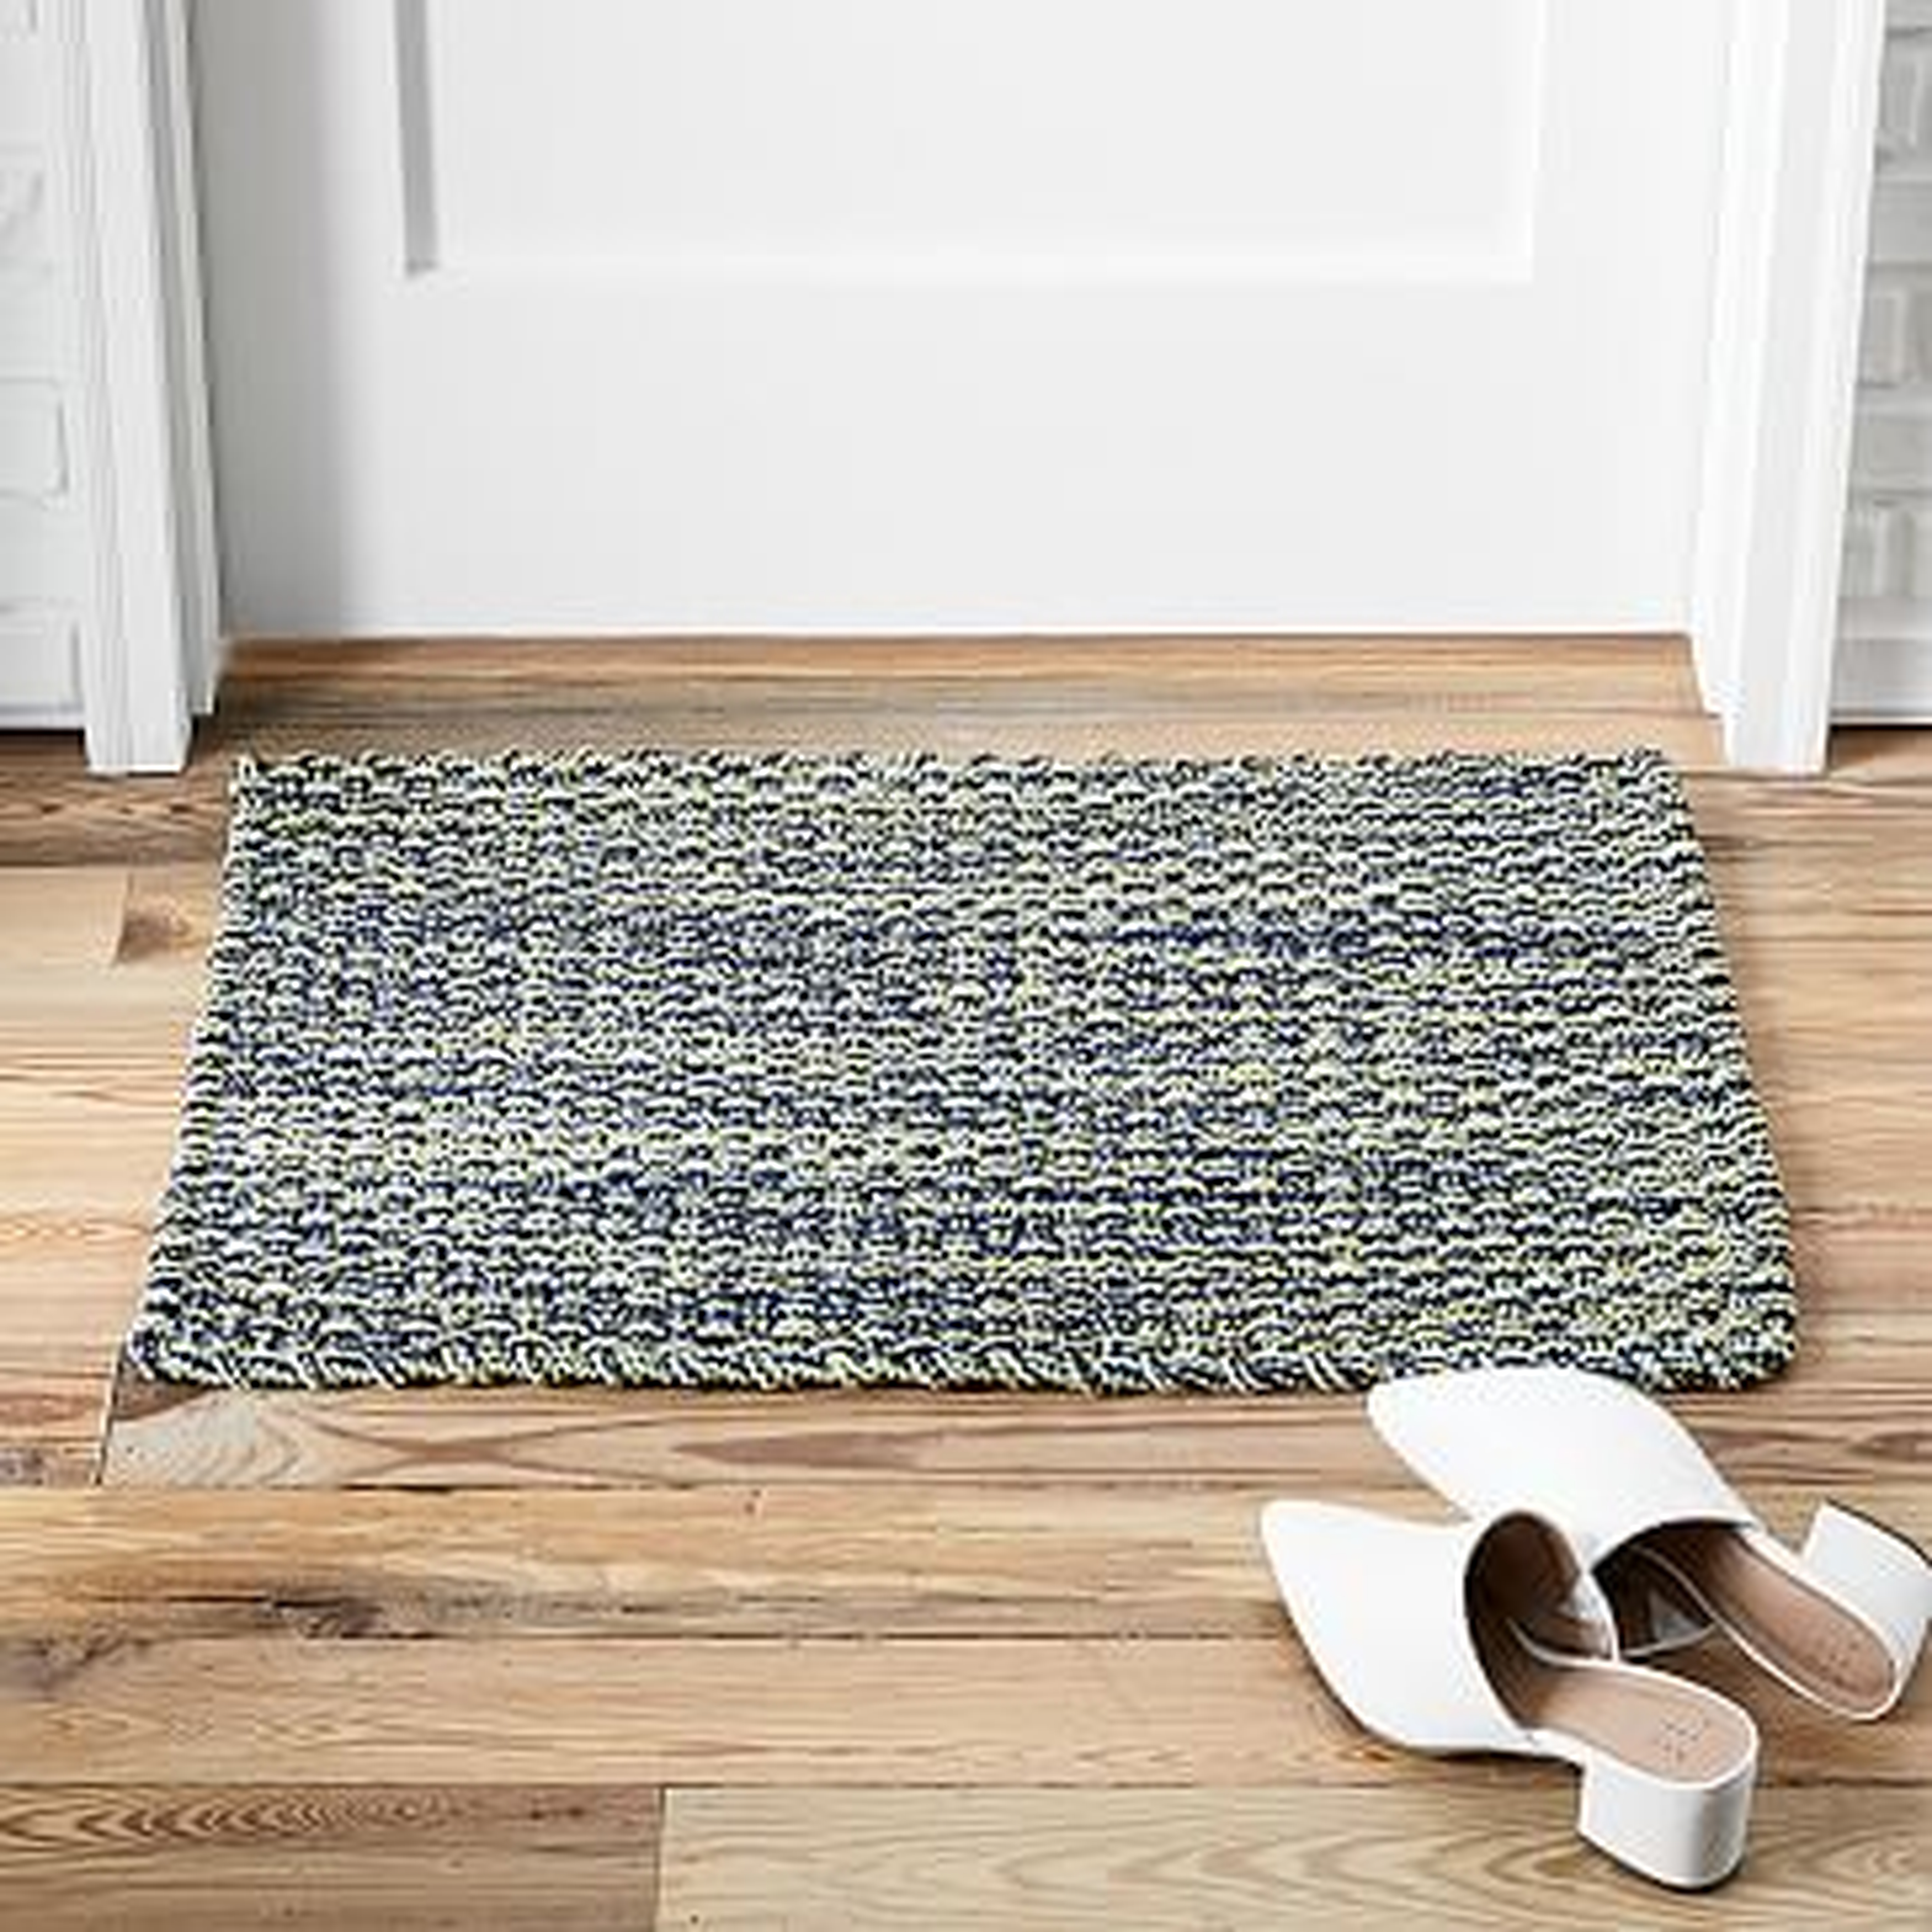 Rope Weave Doormat, 18"x30", Midnight - West Elm